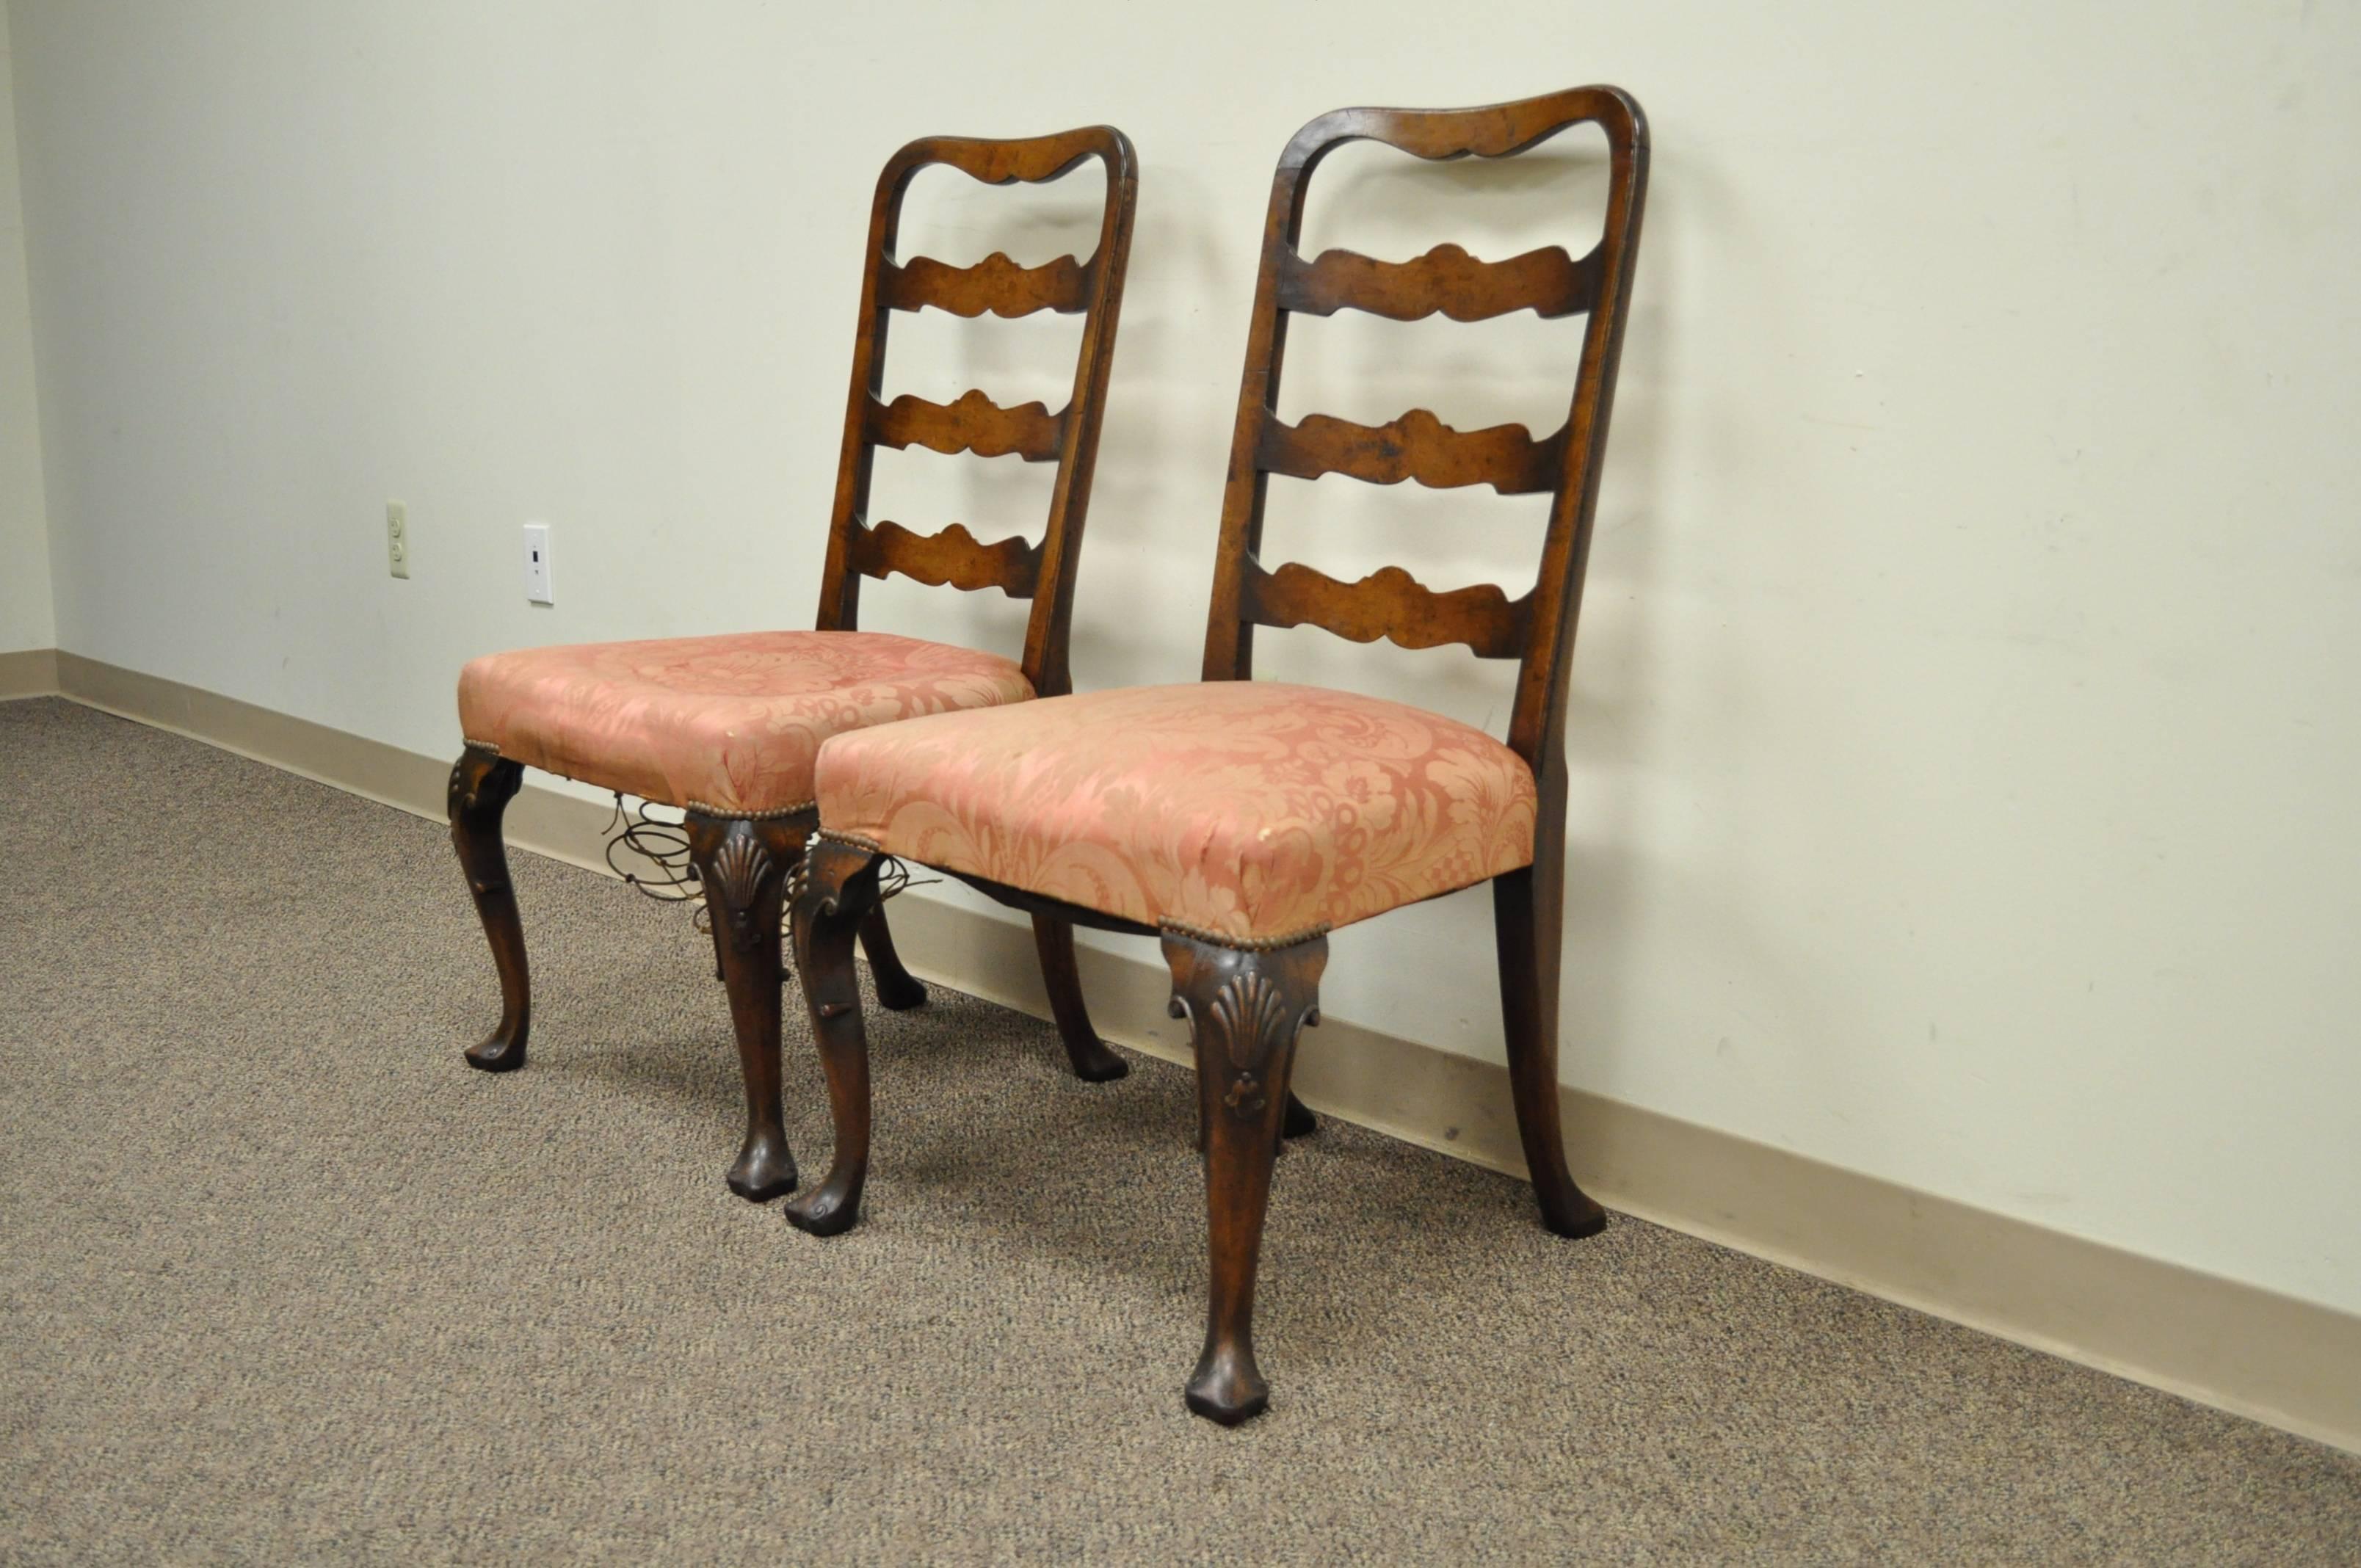 Remarquable paire de chaises d'appoint à dossier ruban en noyer sculpté à la main, datant du XVIIIe siècle. Les chaises présentent des échelons sculptés à la main et à bord biseauté, des genoux sculptés en coquille, des pieds cabrioles galbés, des